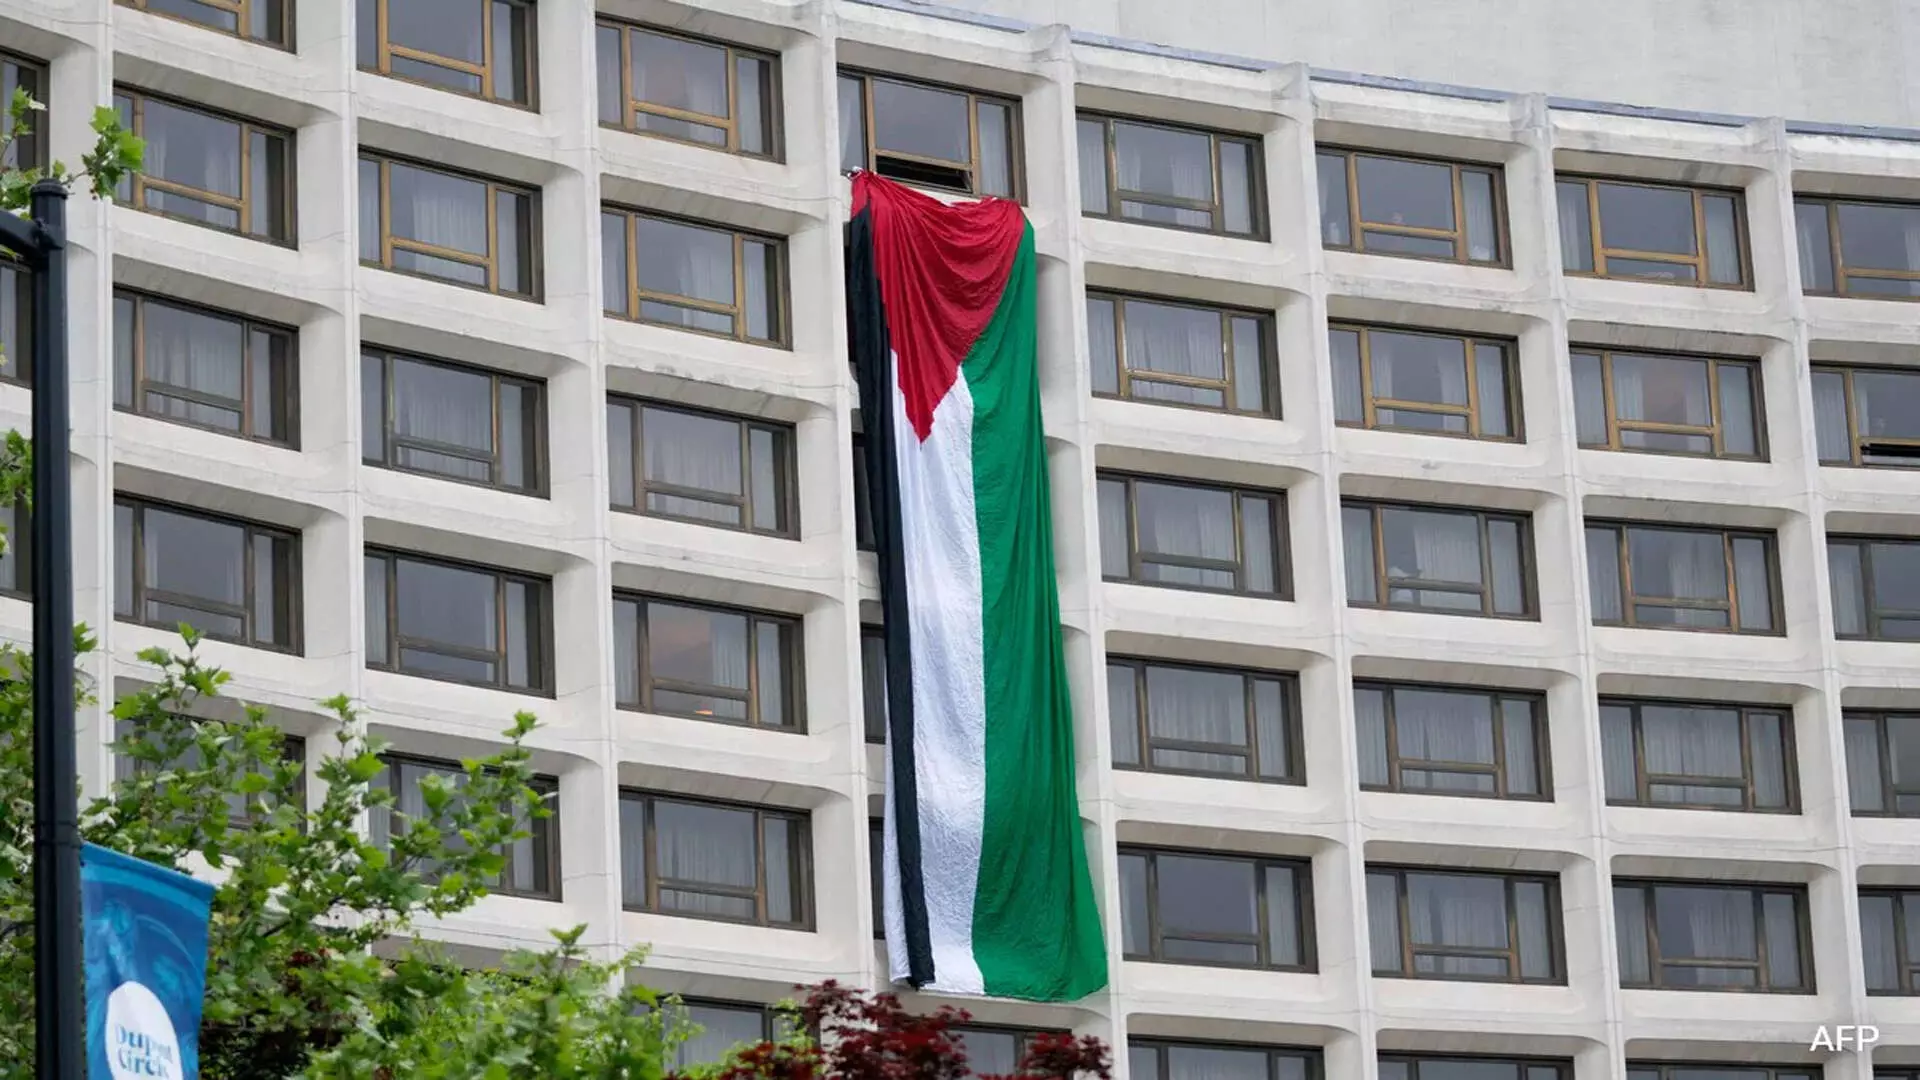 प्रदर्शनकारियों ने बिडेन के व्हाइट हाउस कार्यक्रम स्थल पर विशाल फिलिस्तीनी झंडा लटकाया